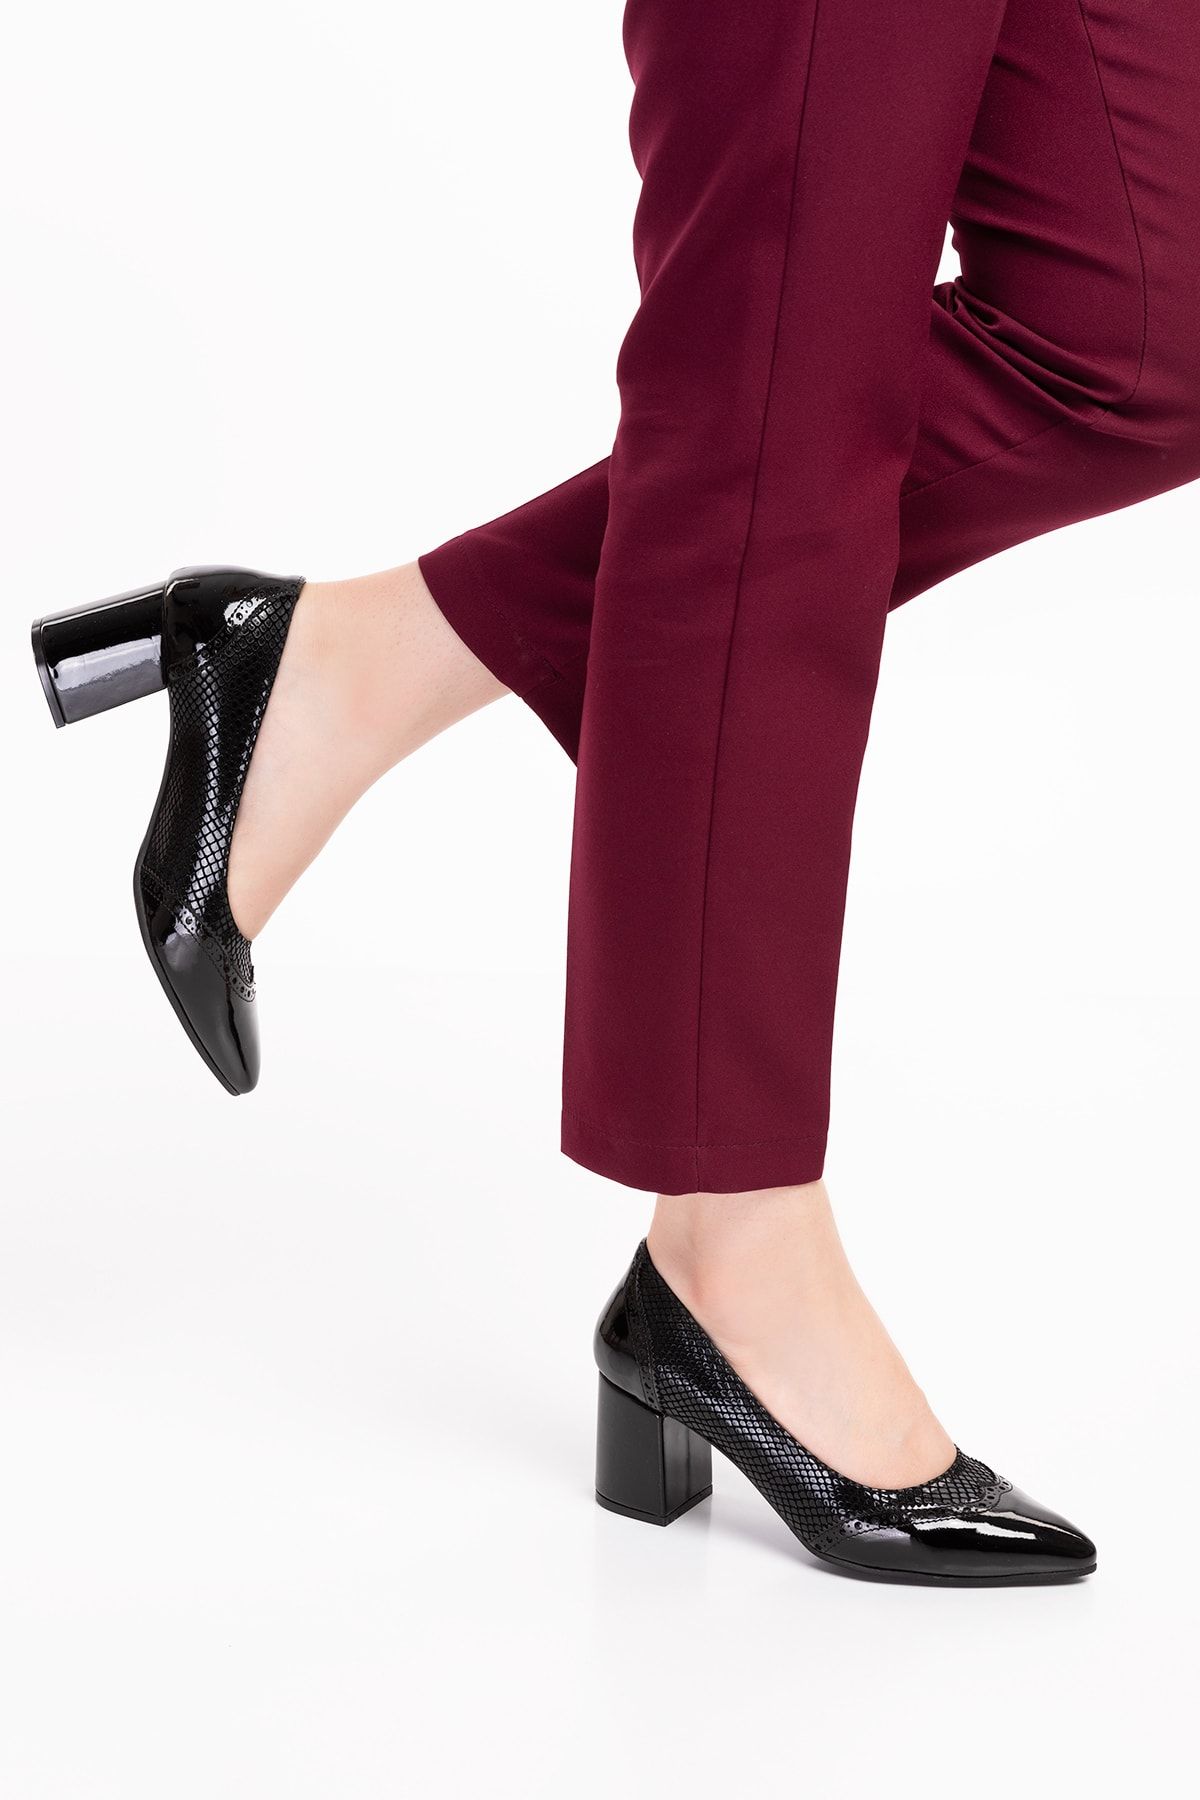 Akgün Terlik Kadın Siyah Yılan Rugan Hakiki Deri Klasik Topuklu Şık Ayakkabı